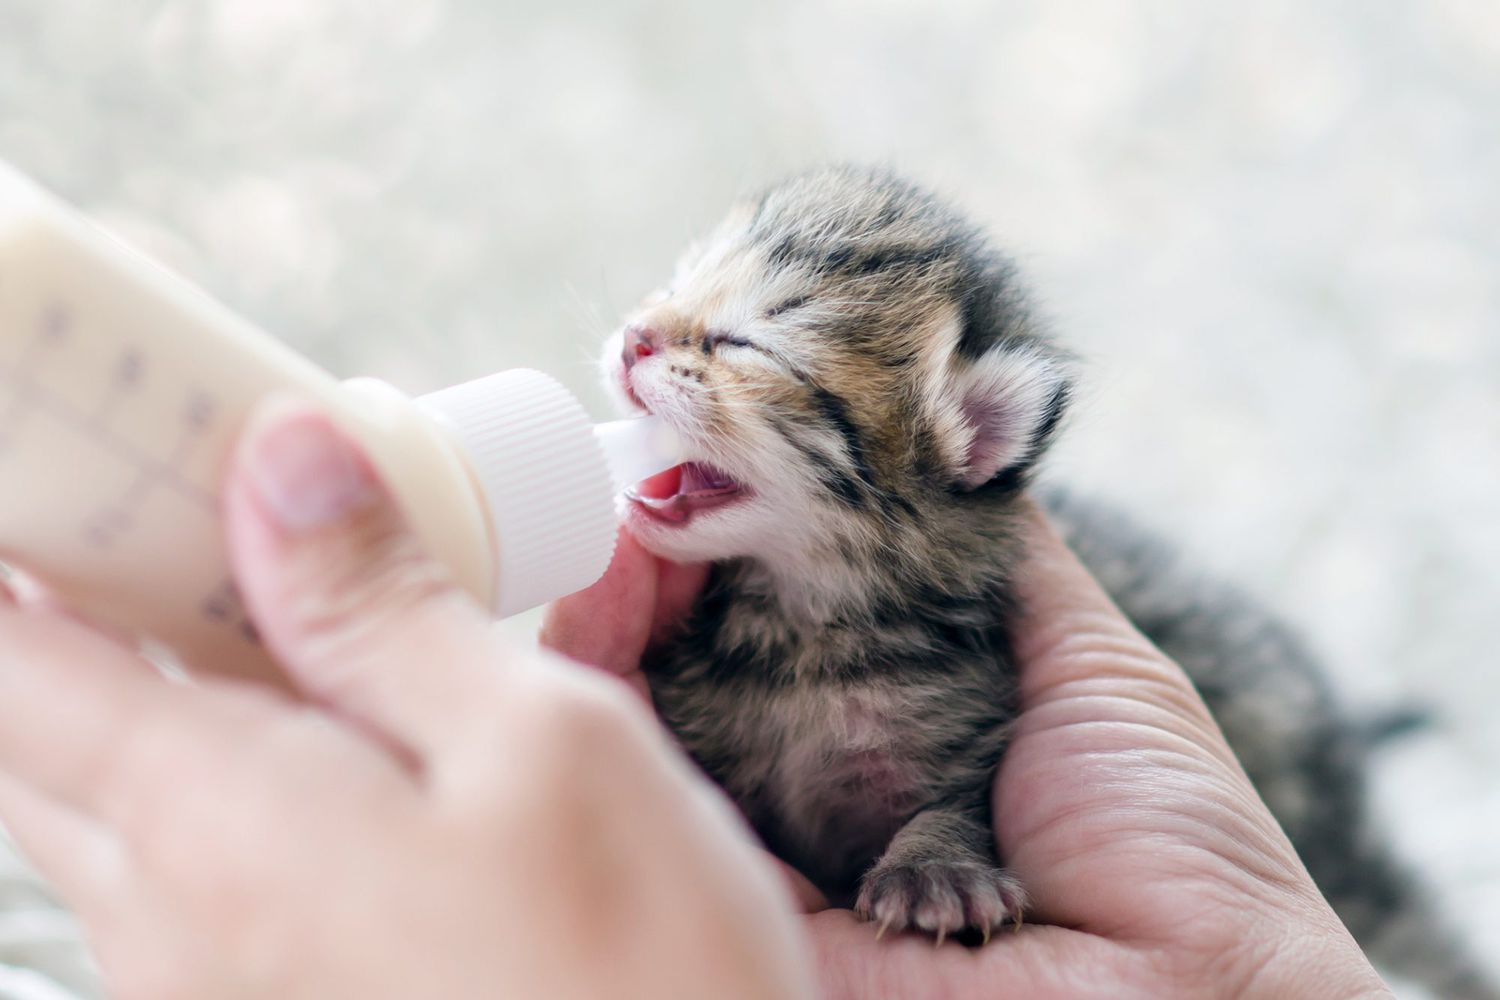 how do i feed a newborn kitten